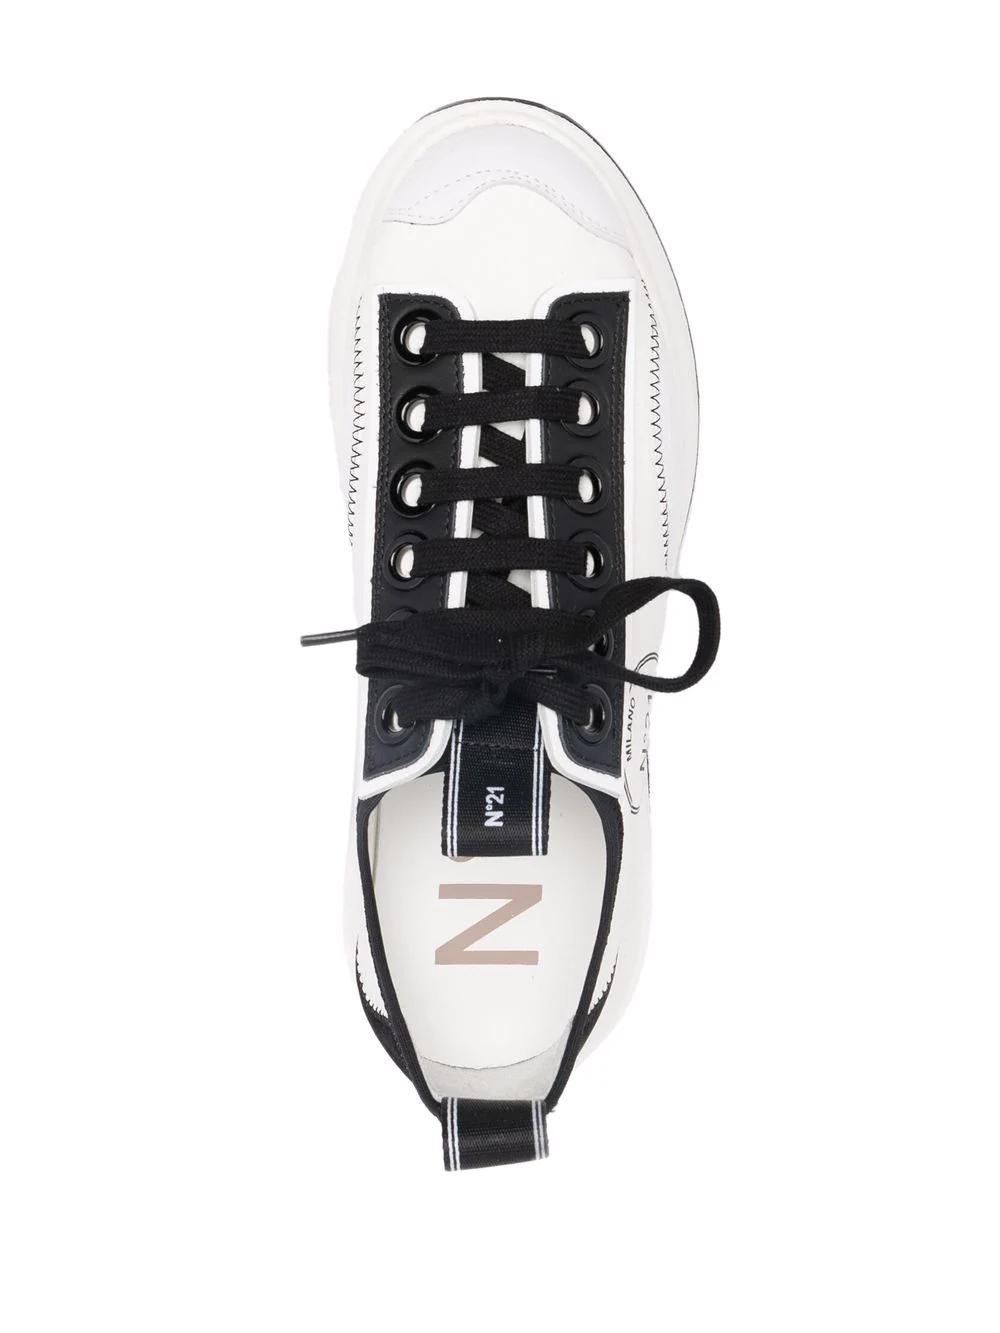 Sneaker N21 blanca negra